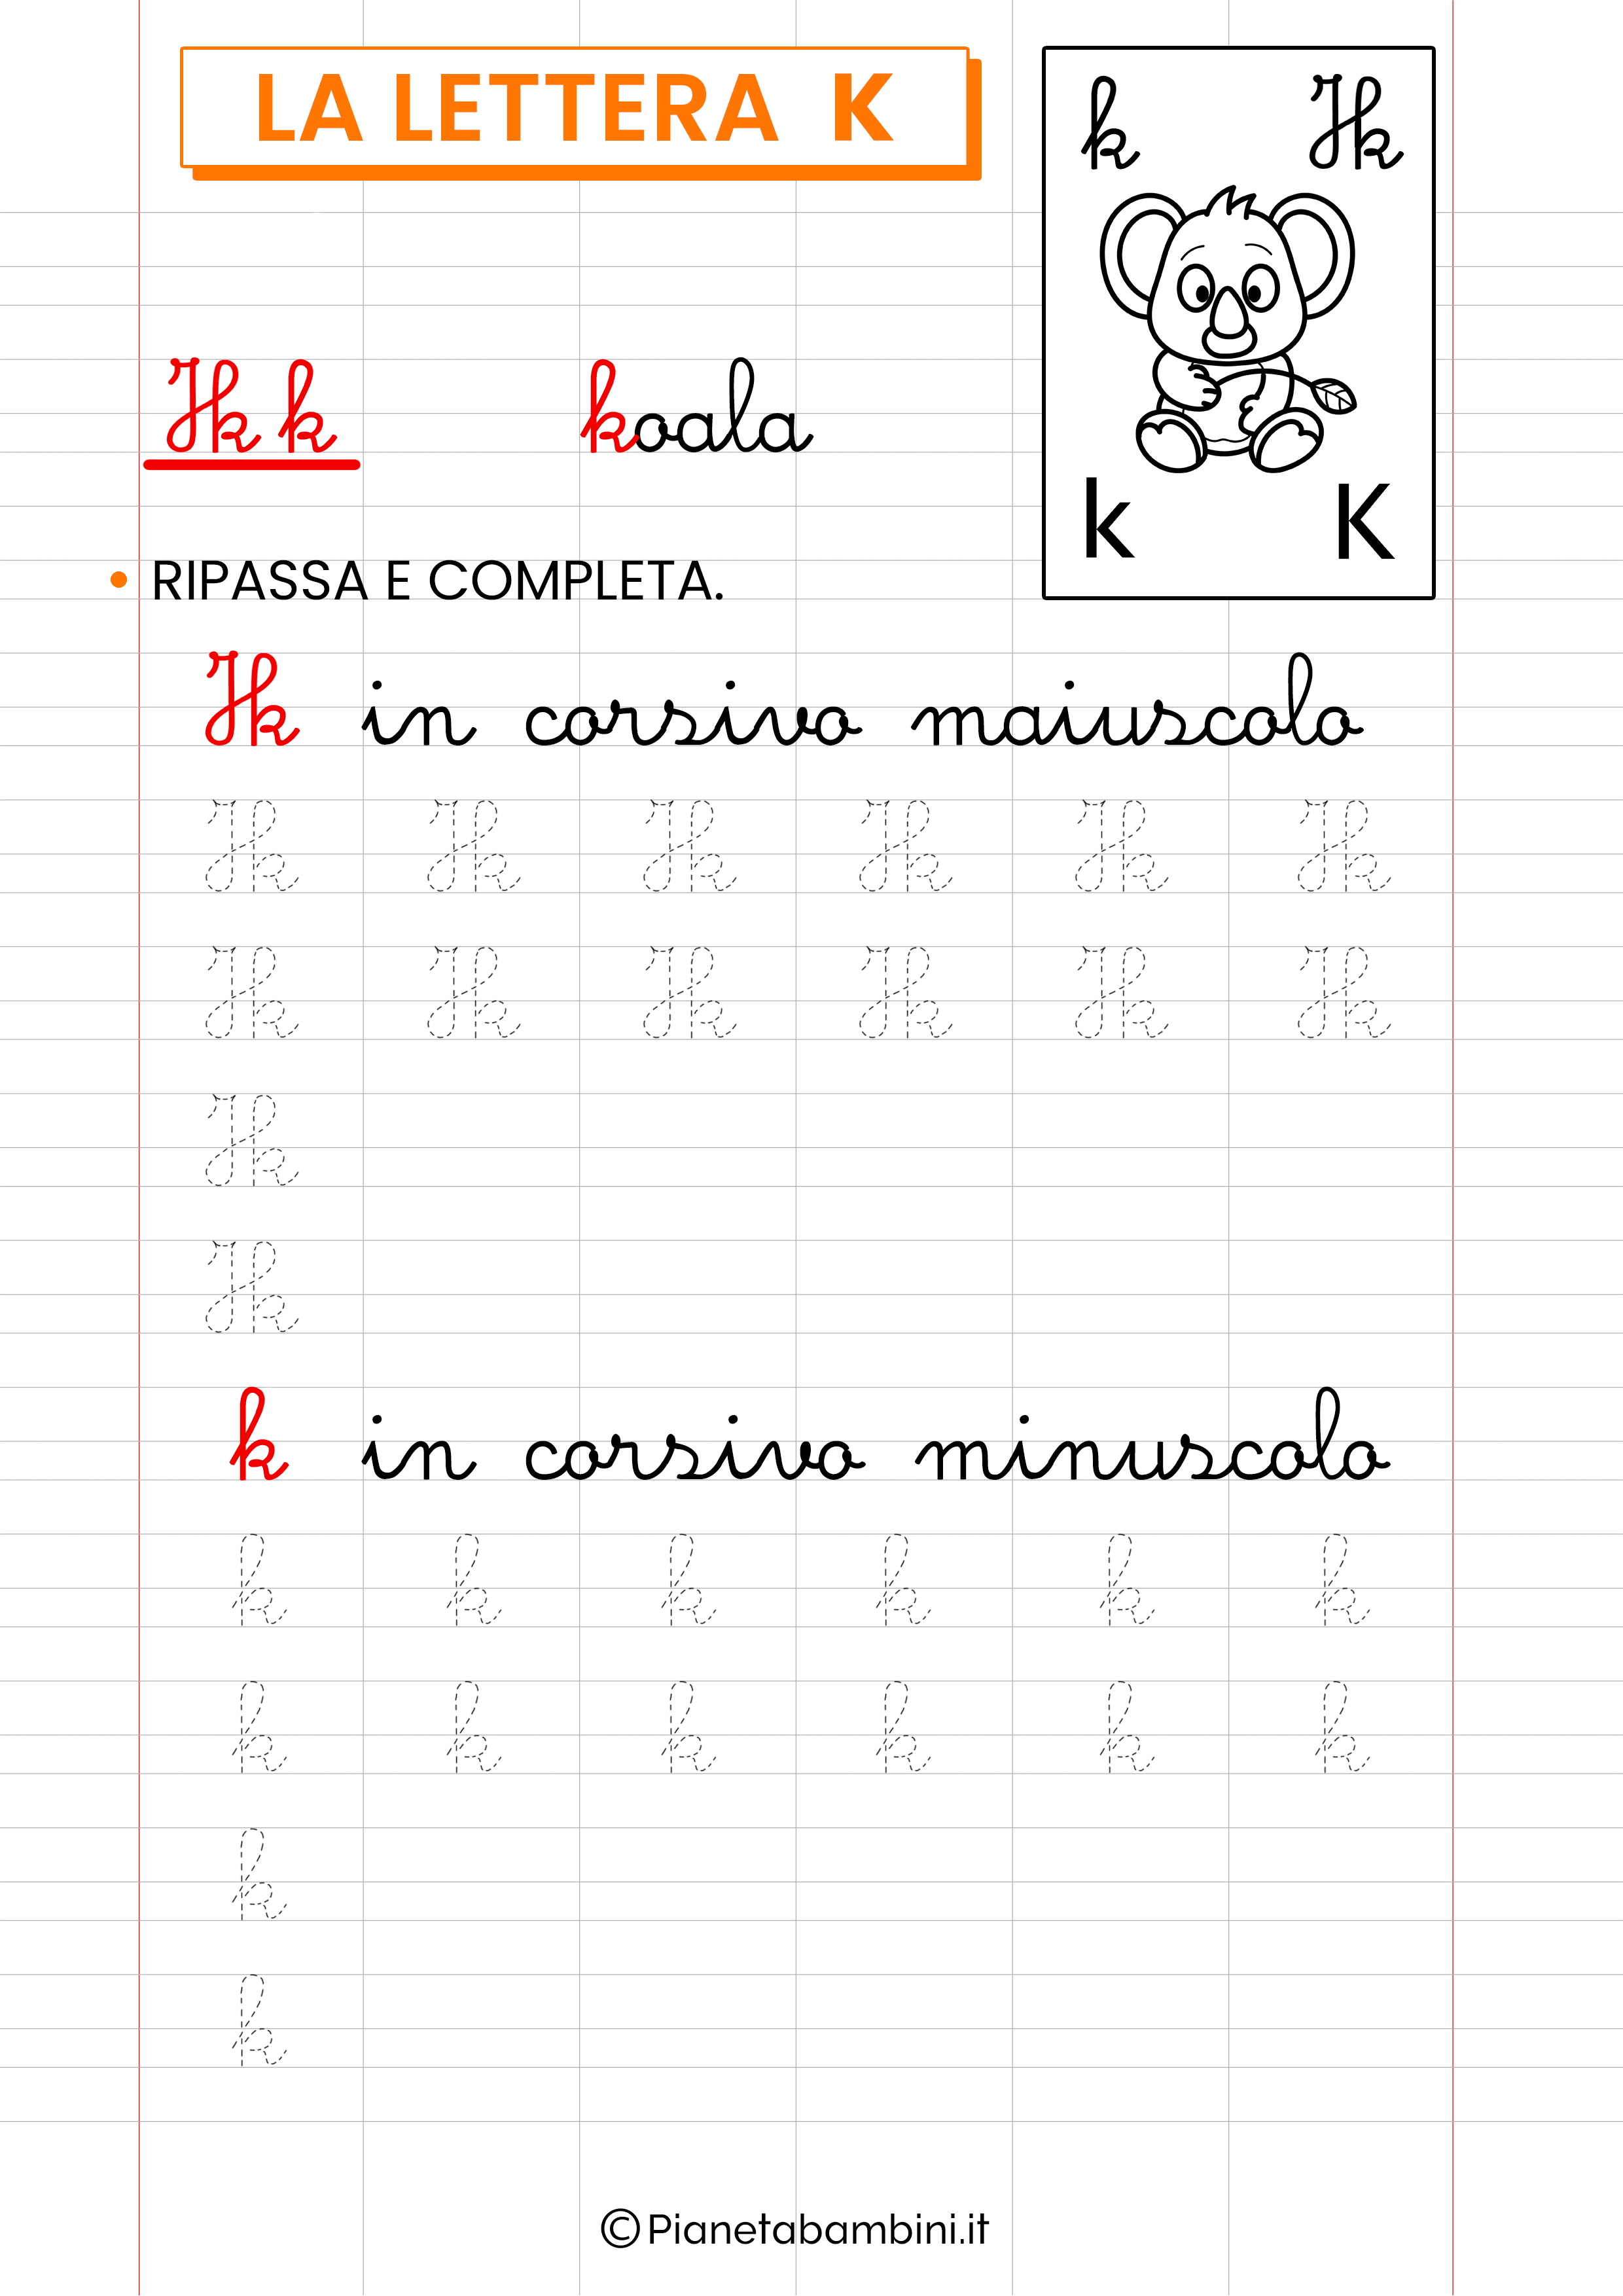 Scheda di pregrafismo sulla lettera straniera K in corsivo